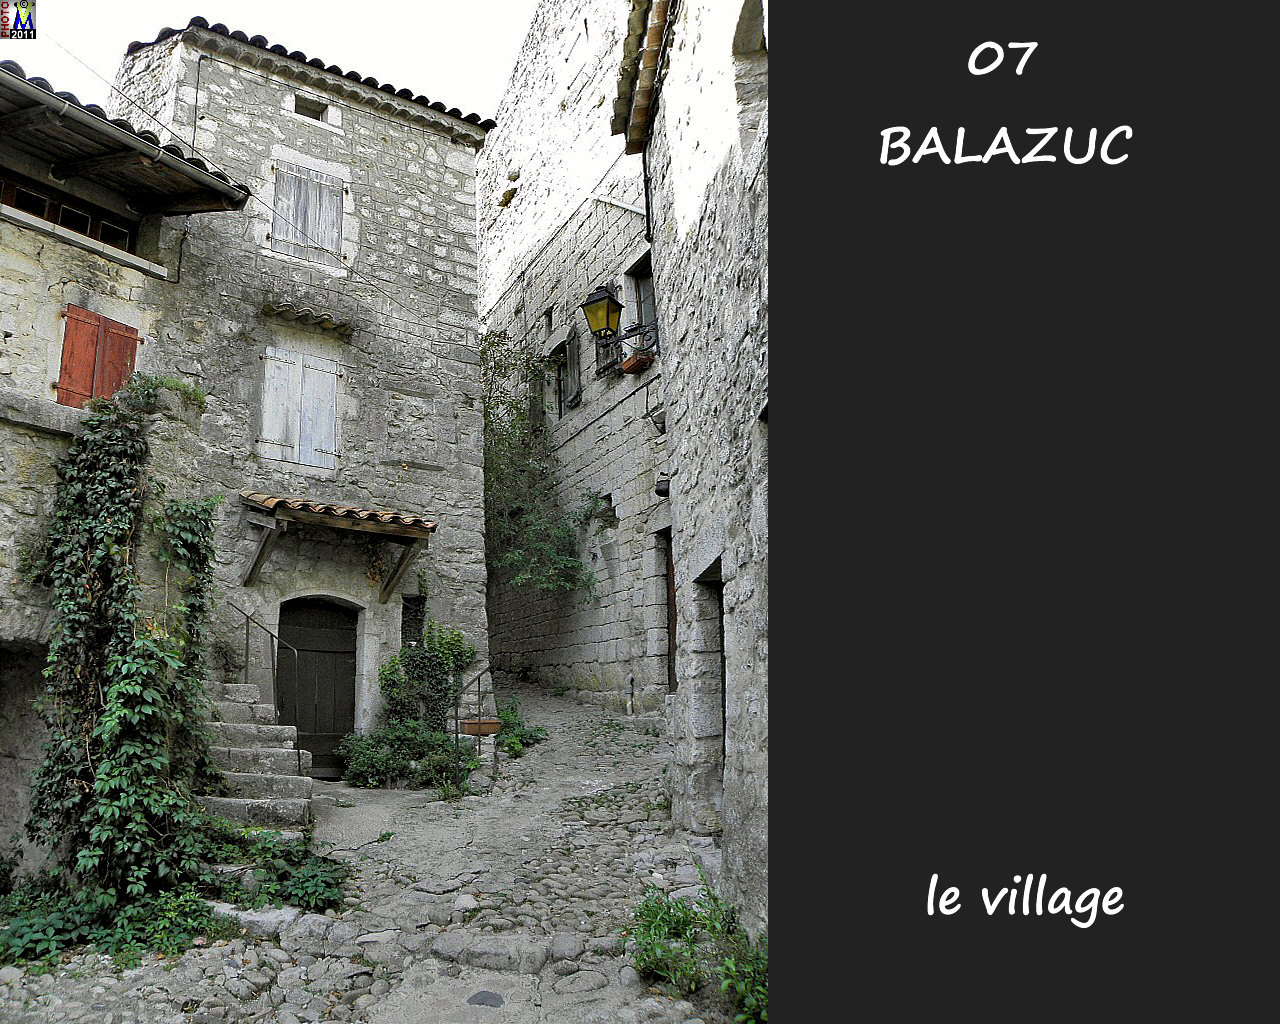 07BALAZUC_village_132.jpg